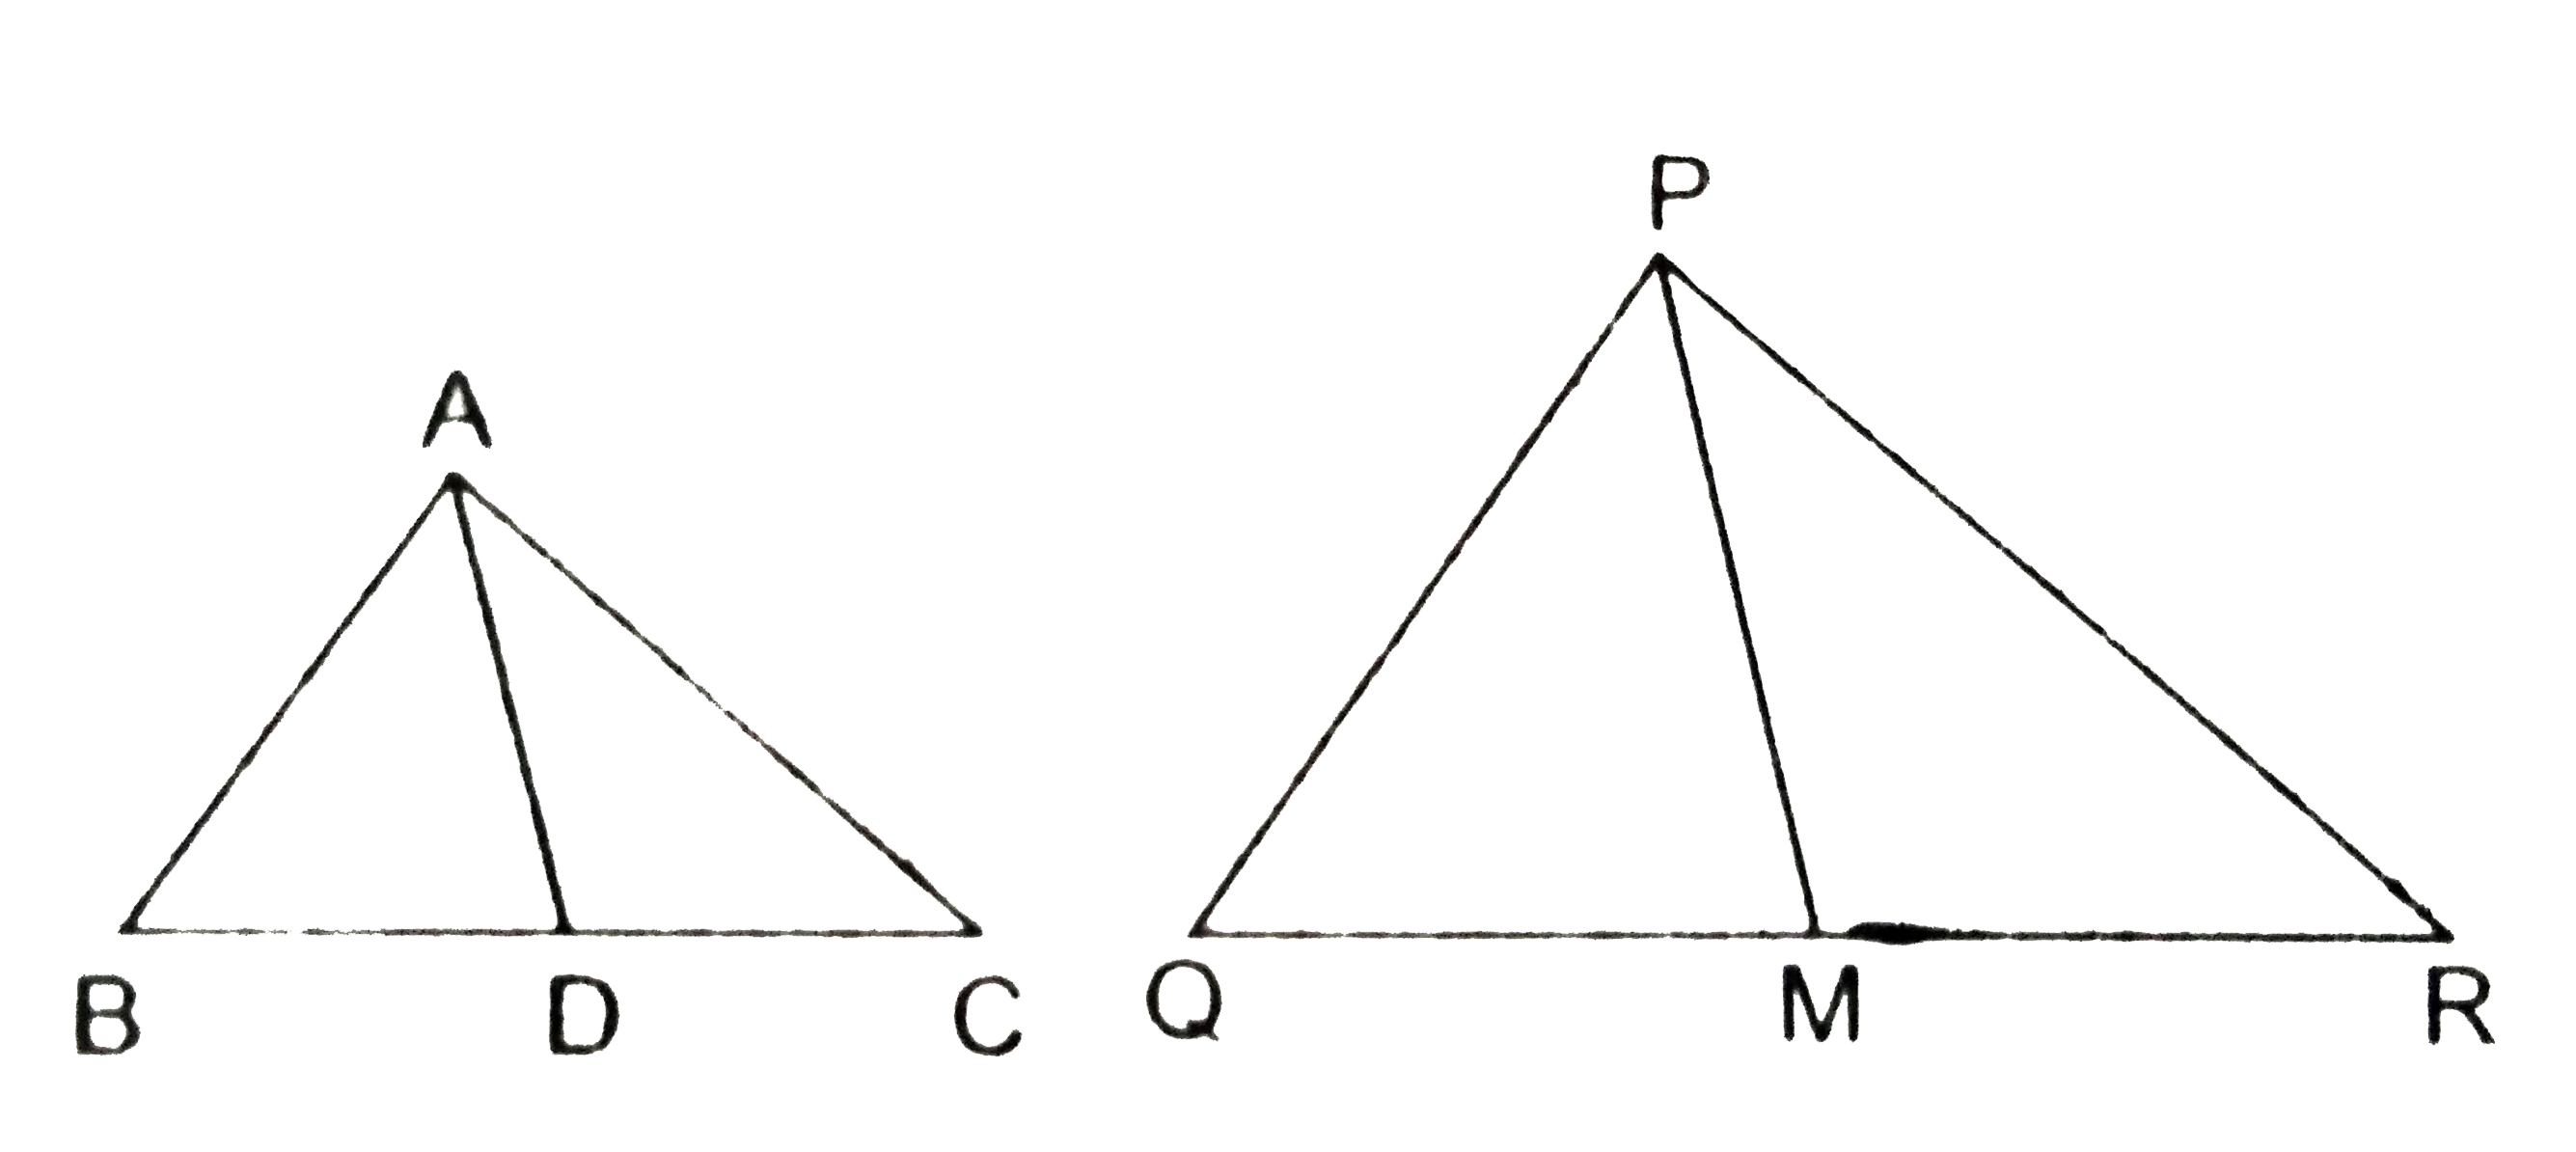 एक  त्रिभुज ABC की भुजाएं AB और BC तथा माध्‍यिका AD एक अन्य त्रिभुज PQR की क्रमशः भुजाओं PQ और QR तथा माध्‍यिका PM के समानुपाती है। दर्शाइए कि DeltaABC~DeltaPQR है।